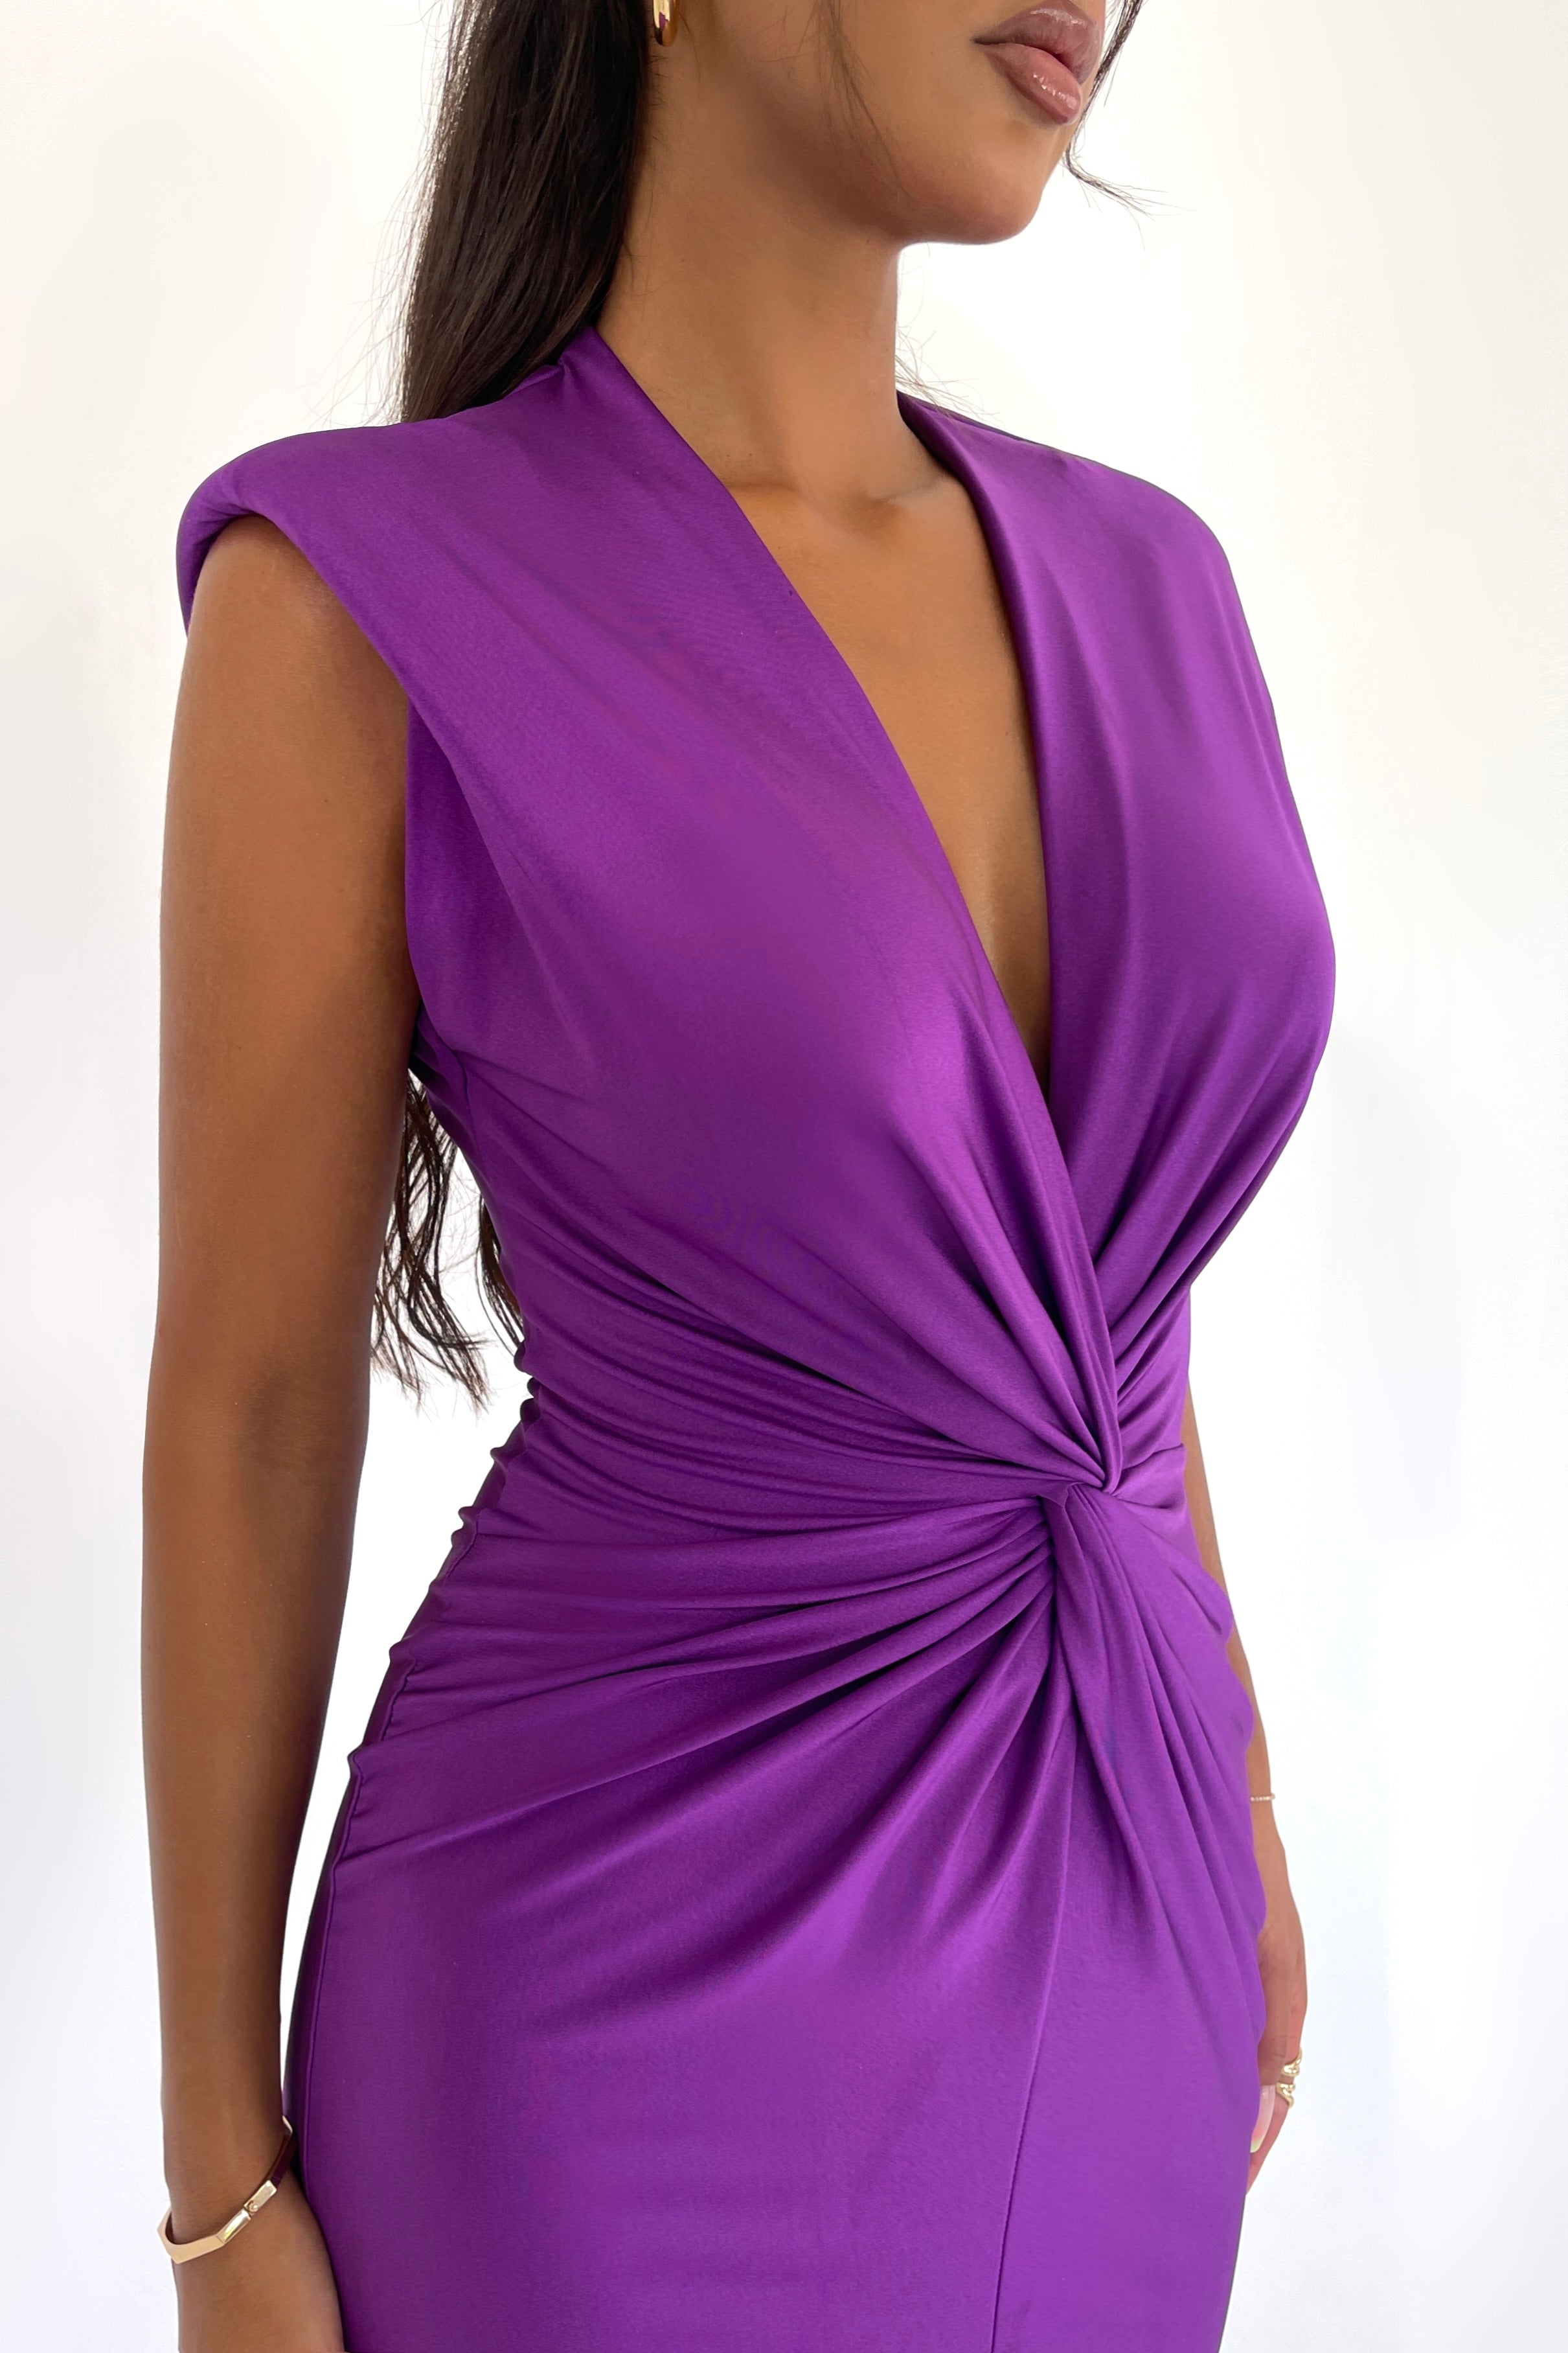 Elowen Purple Dress